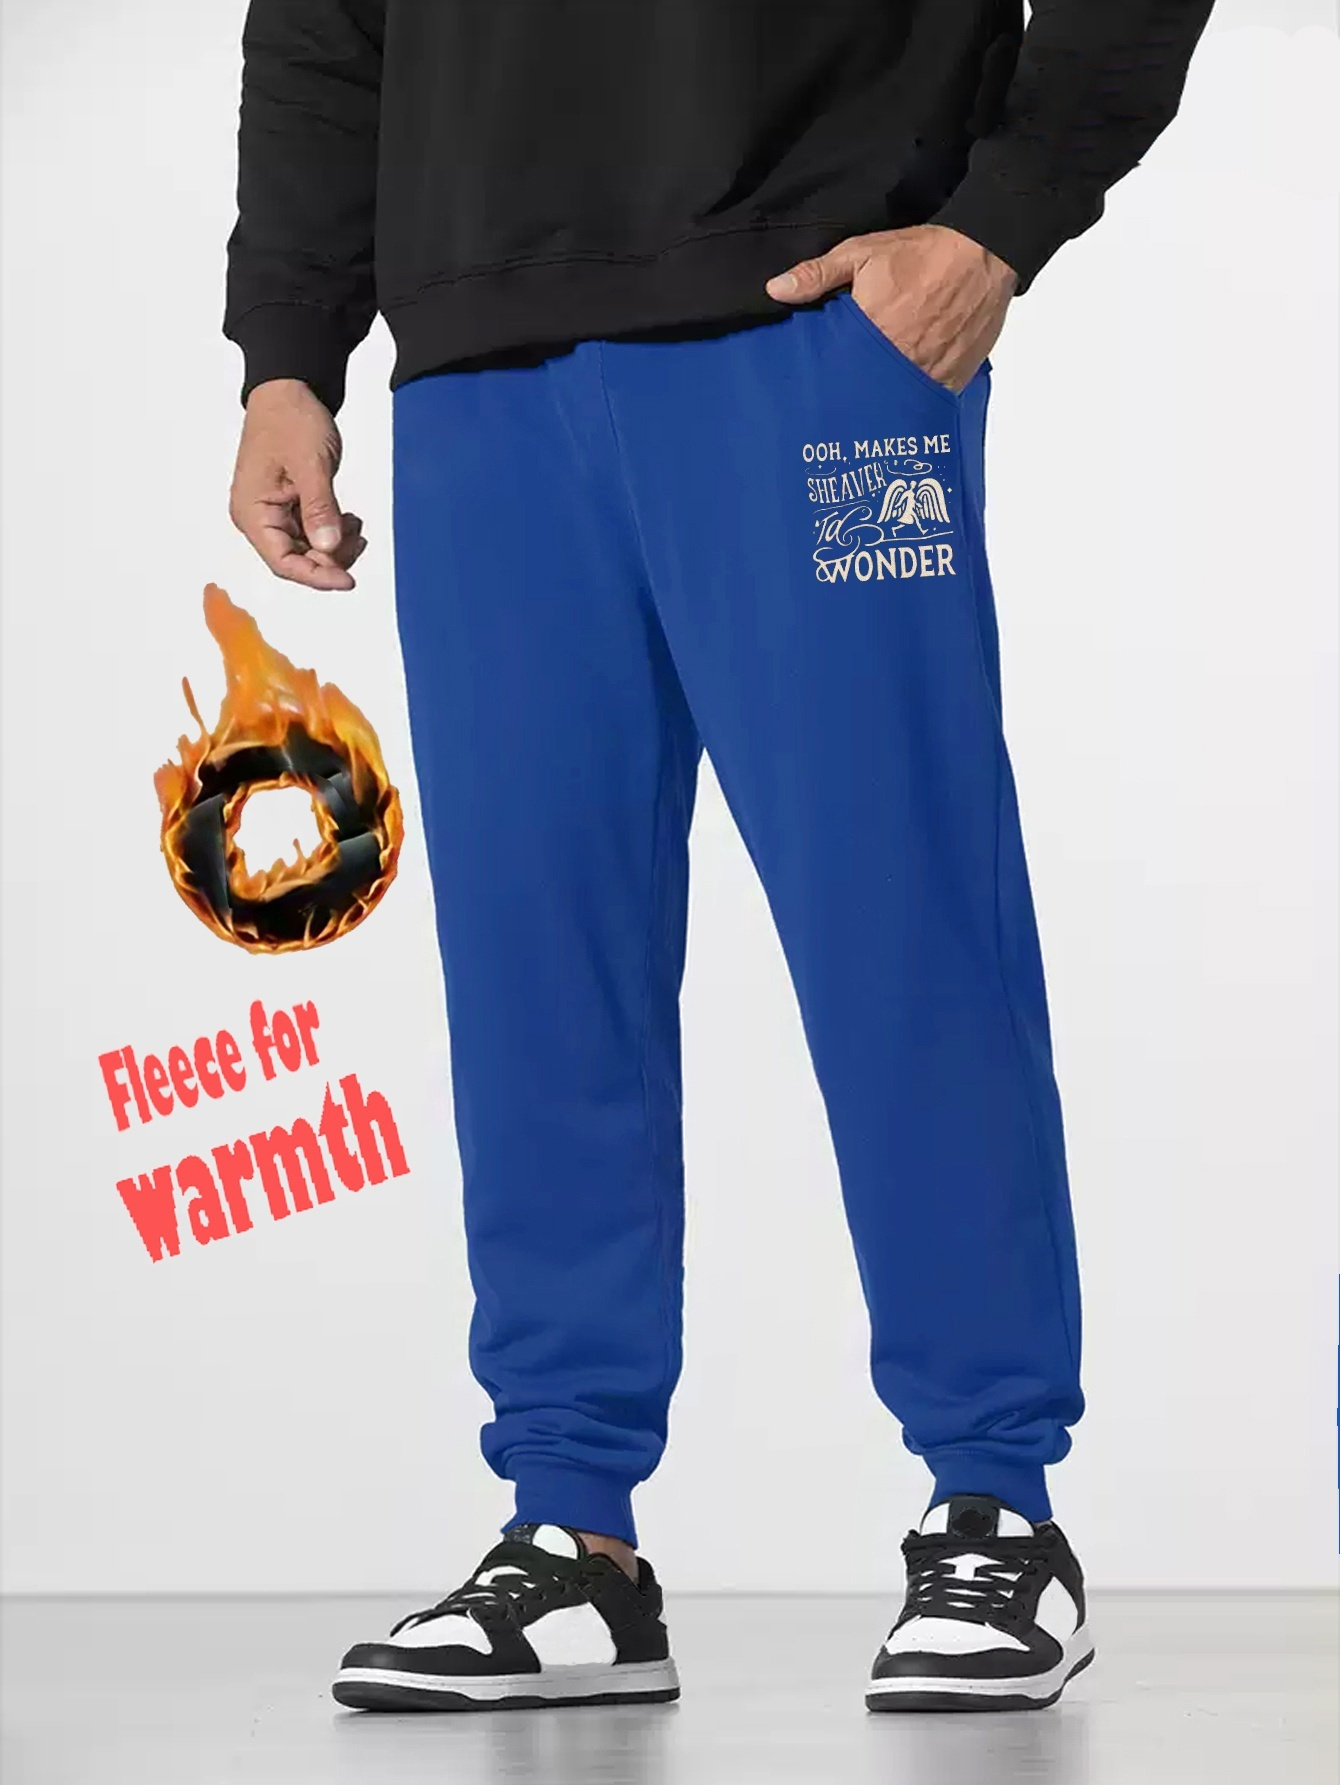 Unisex Fleece Jogging Bottoms,Men's Warm Thermal Fleece Jogger